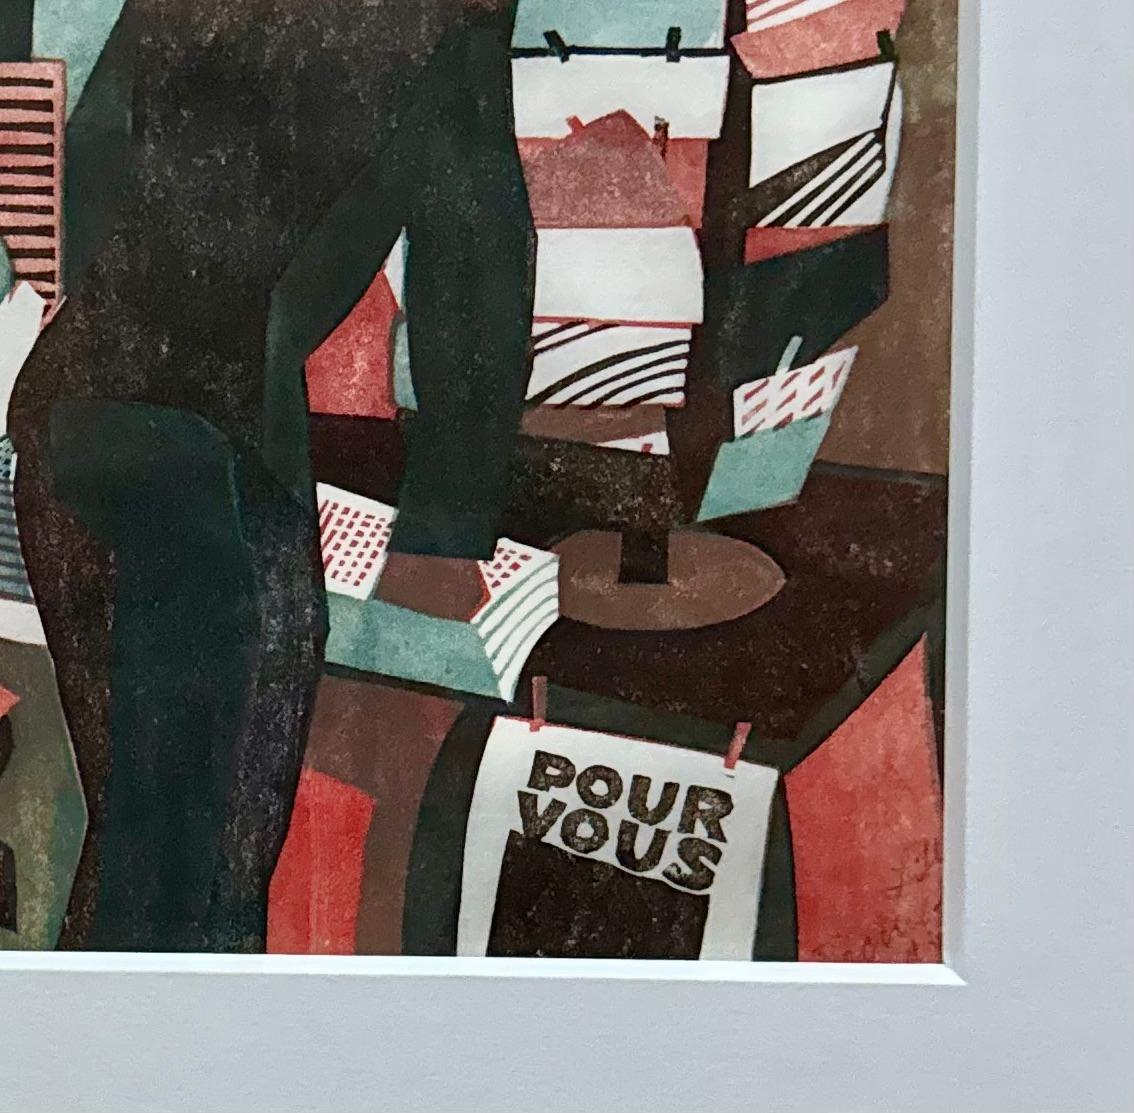 „Kiosk in Paris“ Britischer Linocut 1/150 Europäischer Modernismus Schweizer Vorticism Deco

Lill Tschudi (Schweizerin, 1911-2004)
Kiosk in Paris (Coppel  LT 29) 
Linolschnitt in Braunschwarz, Zinnoberrot und Blaugrau, 1933, auf gewebedünnem